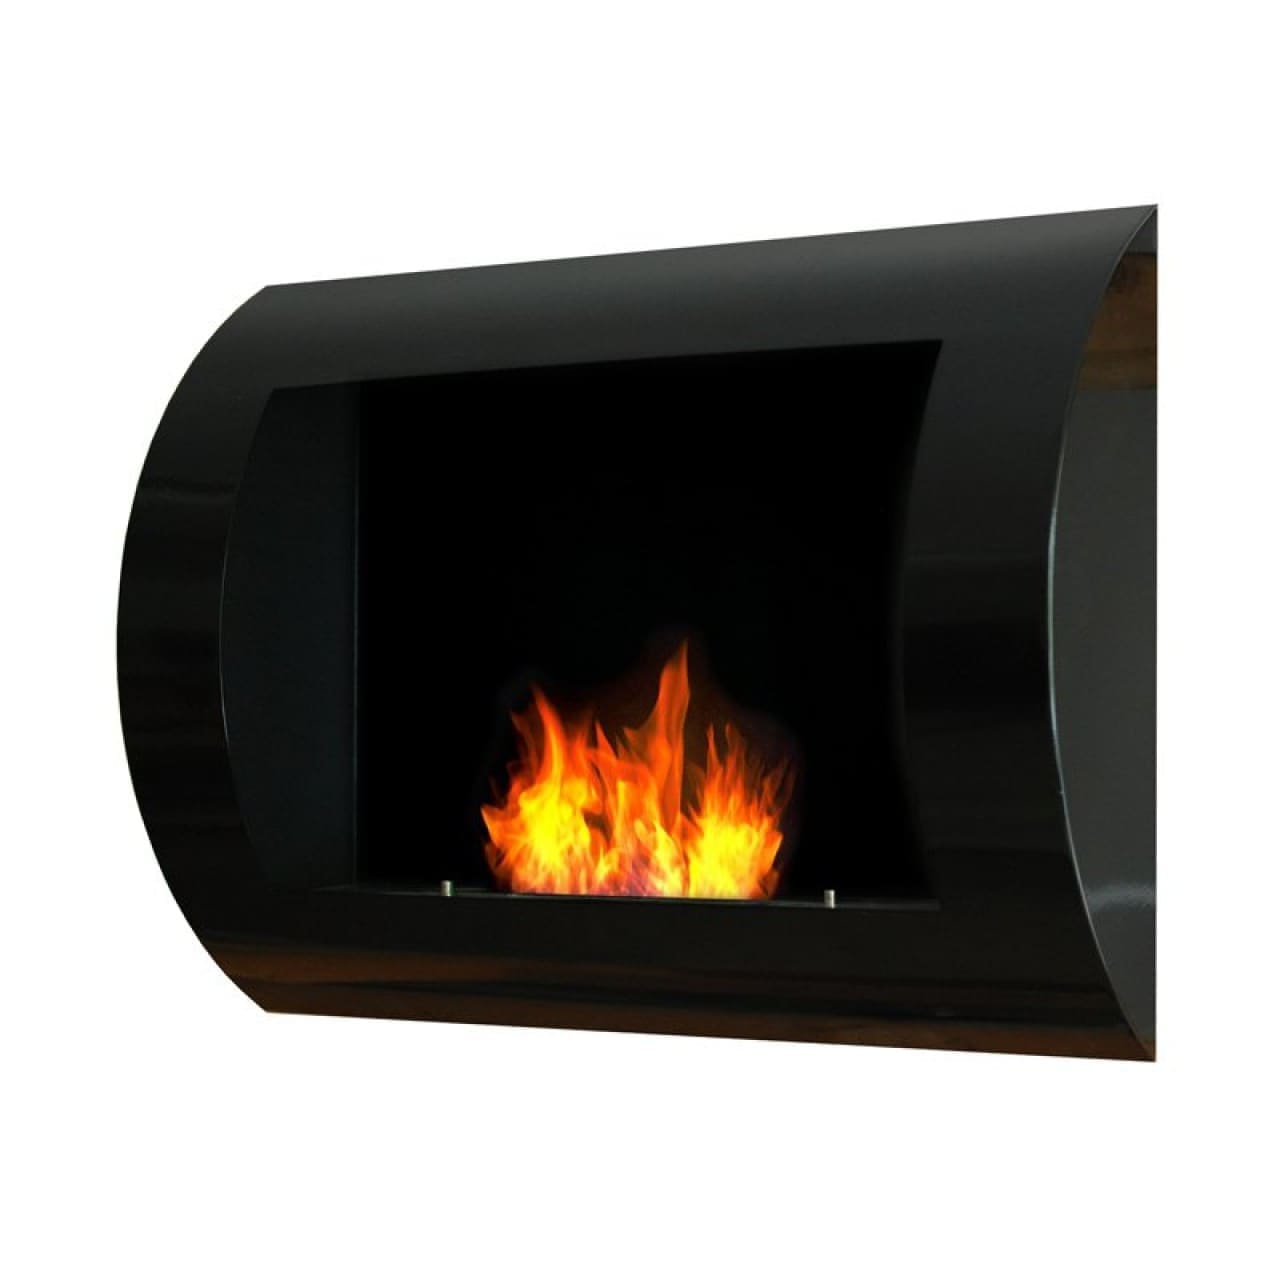 When is it worth choosing a bio-fireplace?